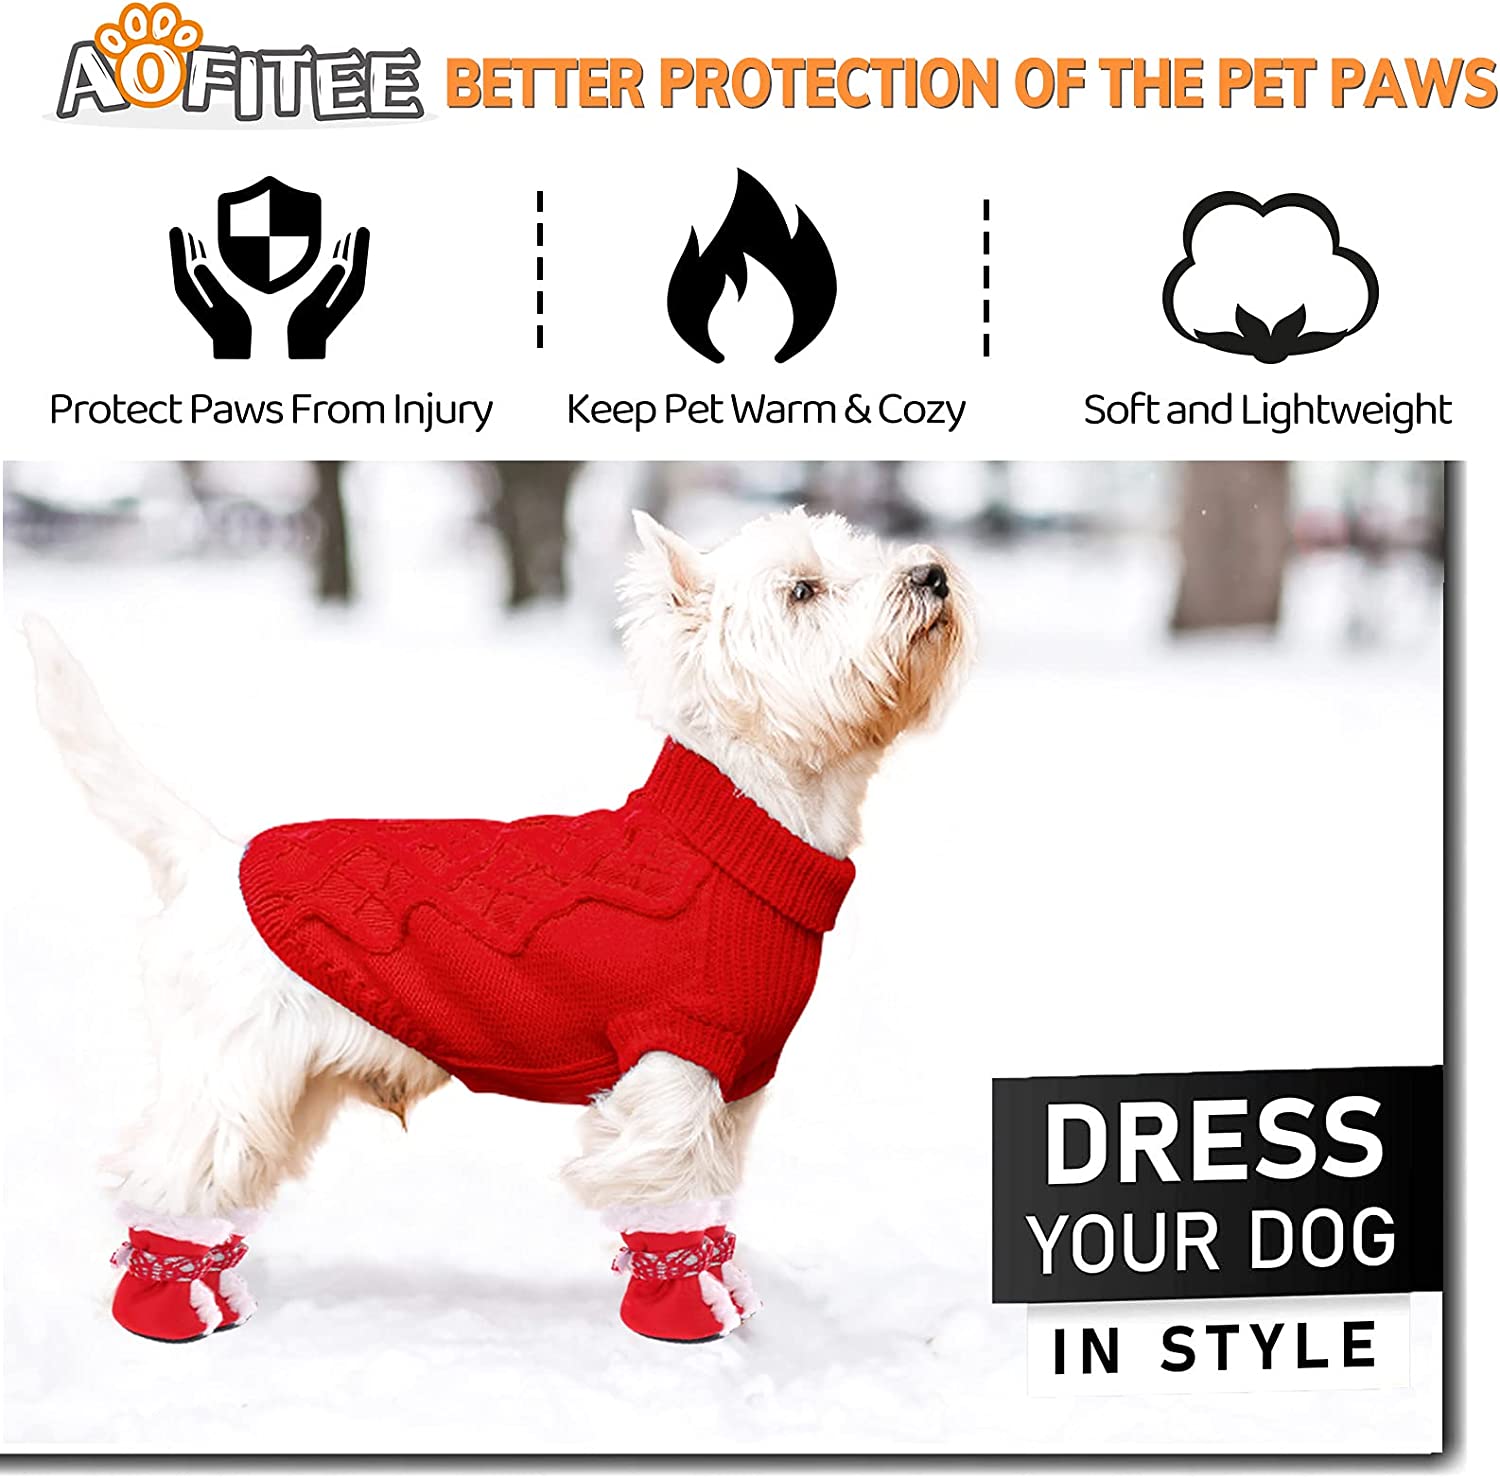  چکمه های برفی توله سگ ما با آستر پشمی نرم و گرم داخل آن می تواند از پنجه های سگ شما در برابر یخ زدگی محافظت کند، آنها را گرم، خشک و راحت در پاییز و زمستان سرد نگه دارد.